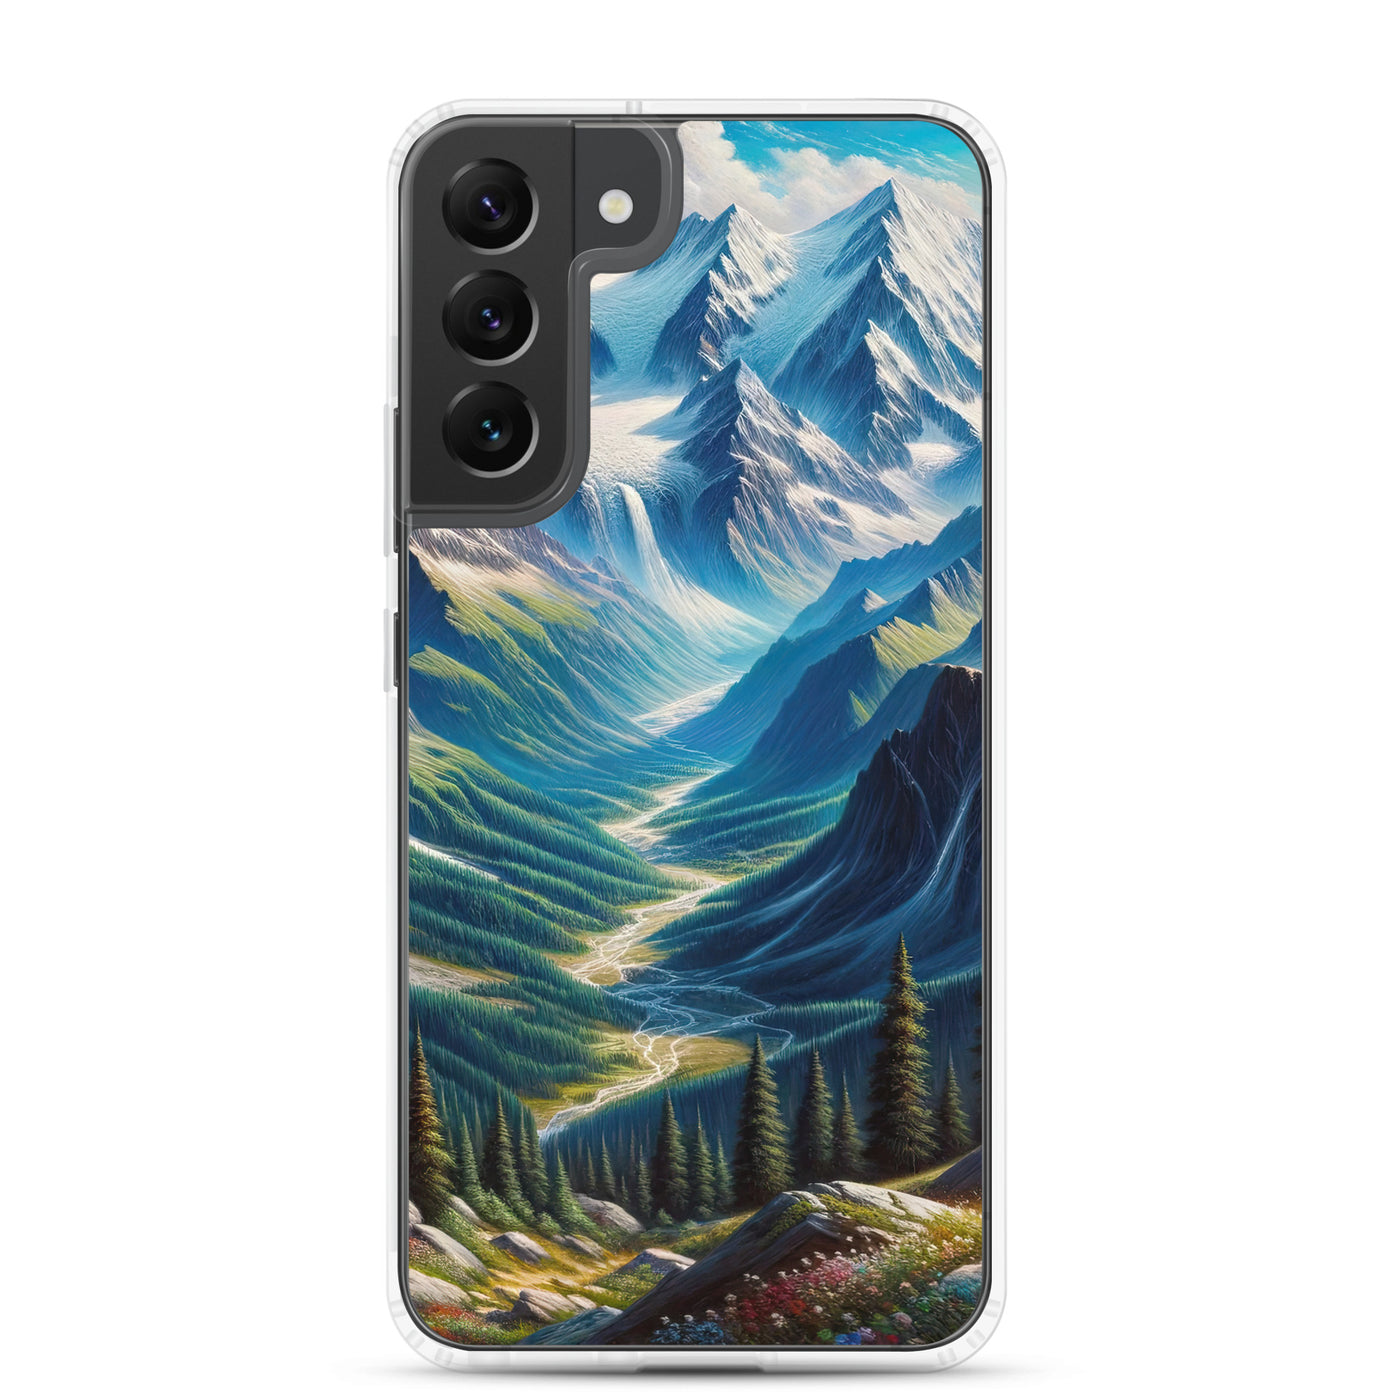 Panorama-Ölgemälde der Alpen mit schneebedeckten Gipfeln und schlängelnden Flusstälern - Samsung Schutzhülle (durchsichtig) berge xxx yyy zzz Samsung Galaxy S22 Plus